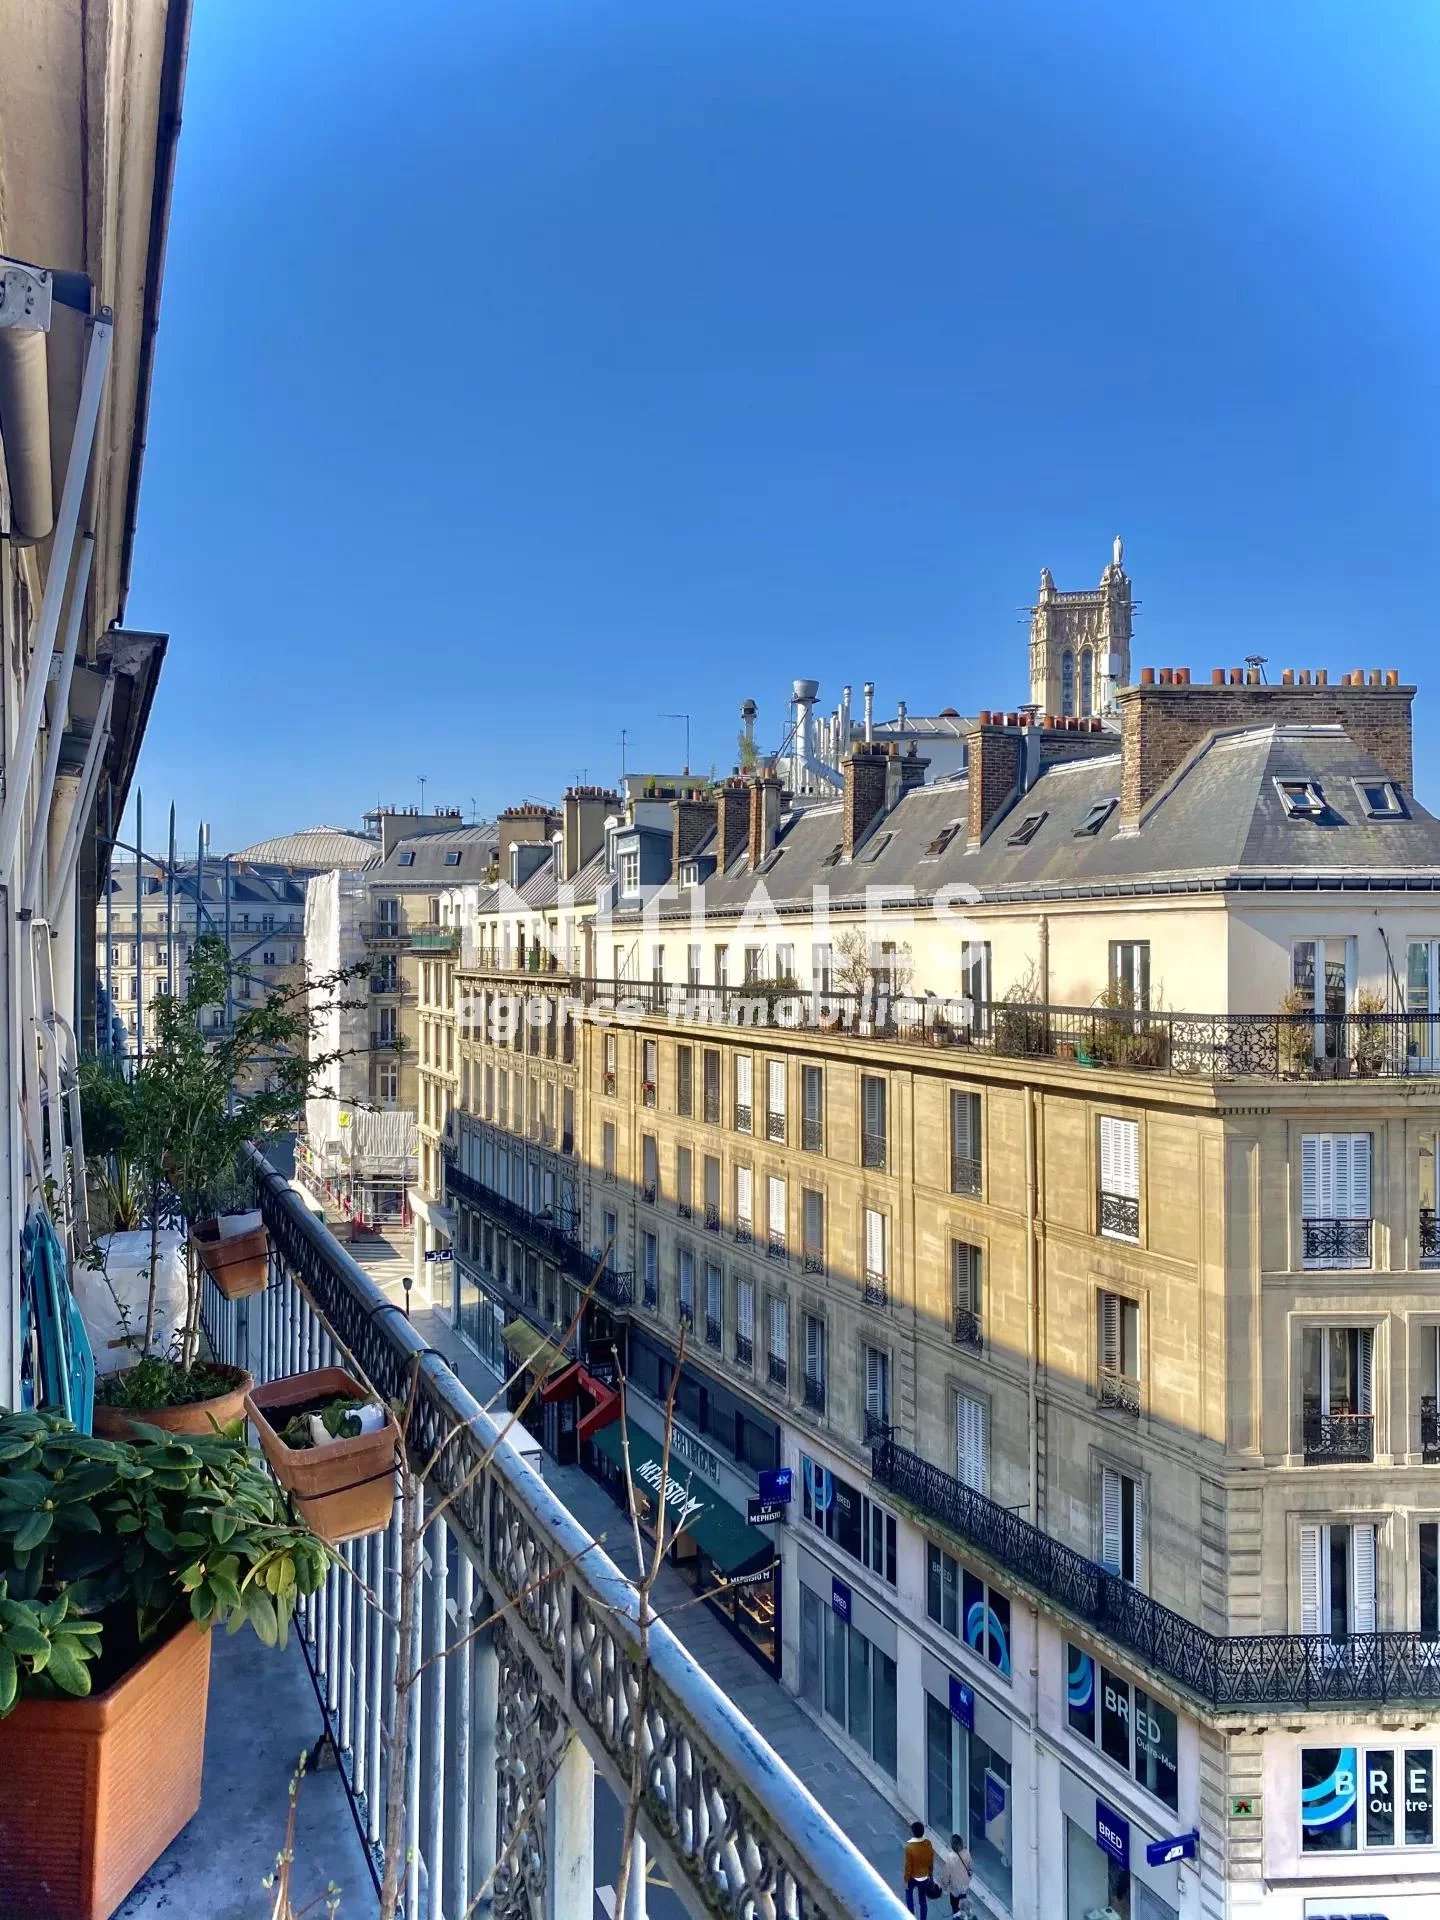 Sale Apartment - Paris 4th (Paris 4ème)